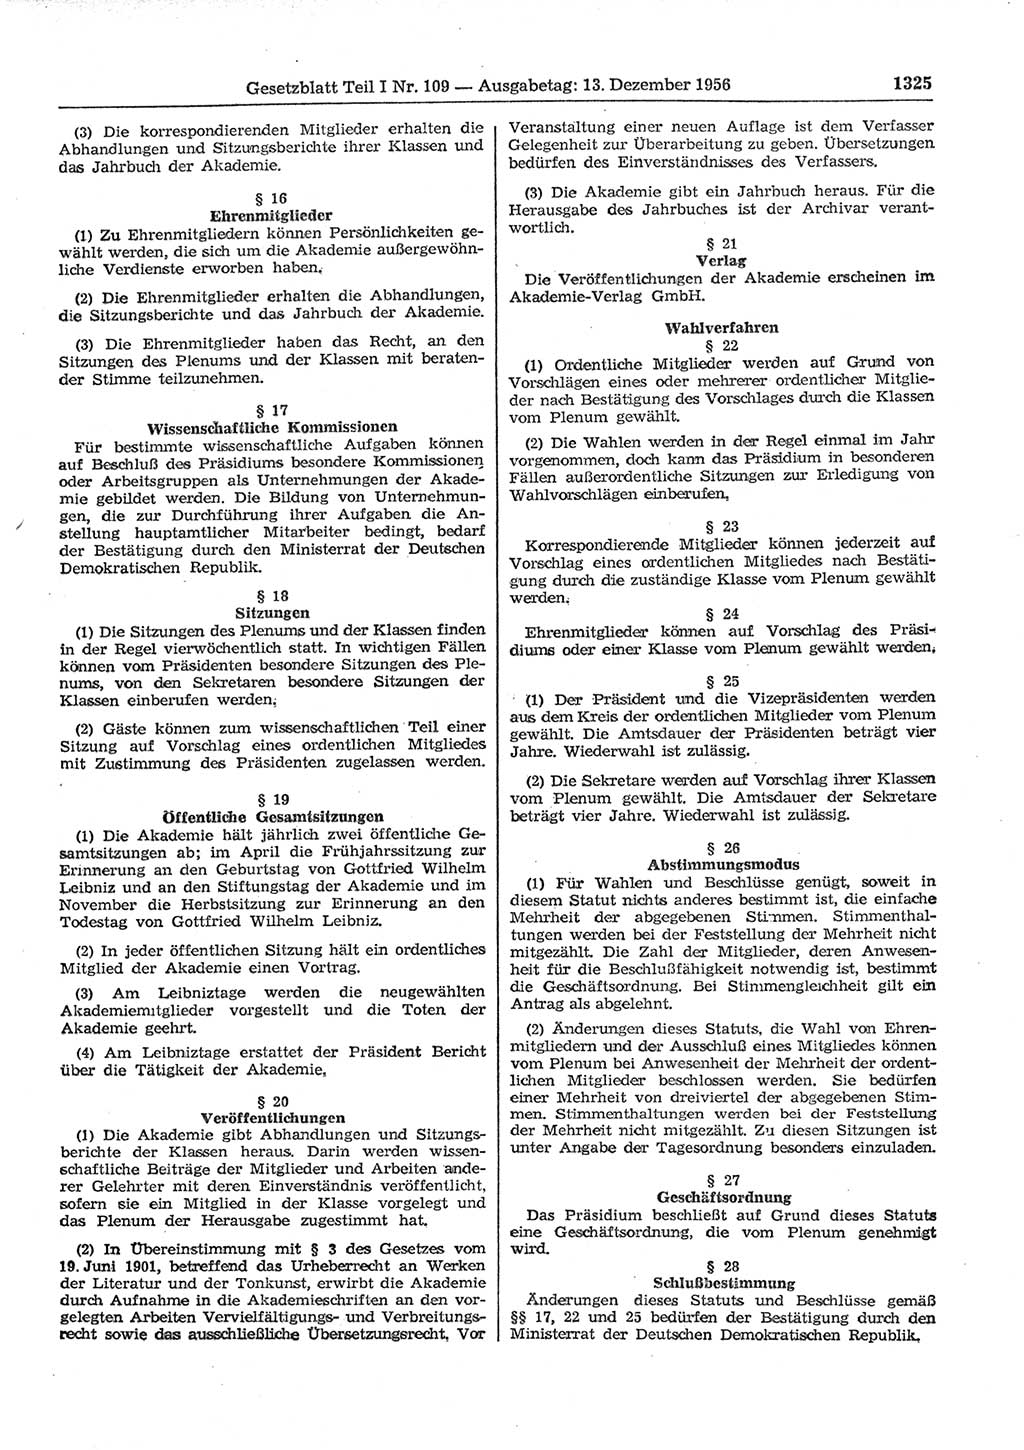 Gesetzblatt (GBl.) der Deutschen Demokratischen Republik (DDR) Teil Ⅰ 1956, Seite 1325 (GBl. DDR Ⅰ 1956, S. 1325)